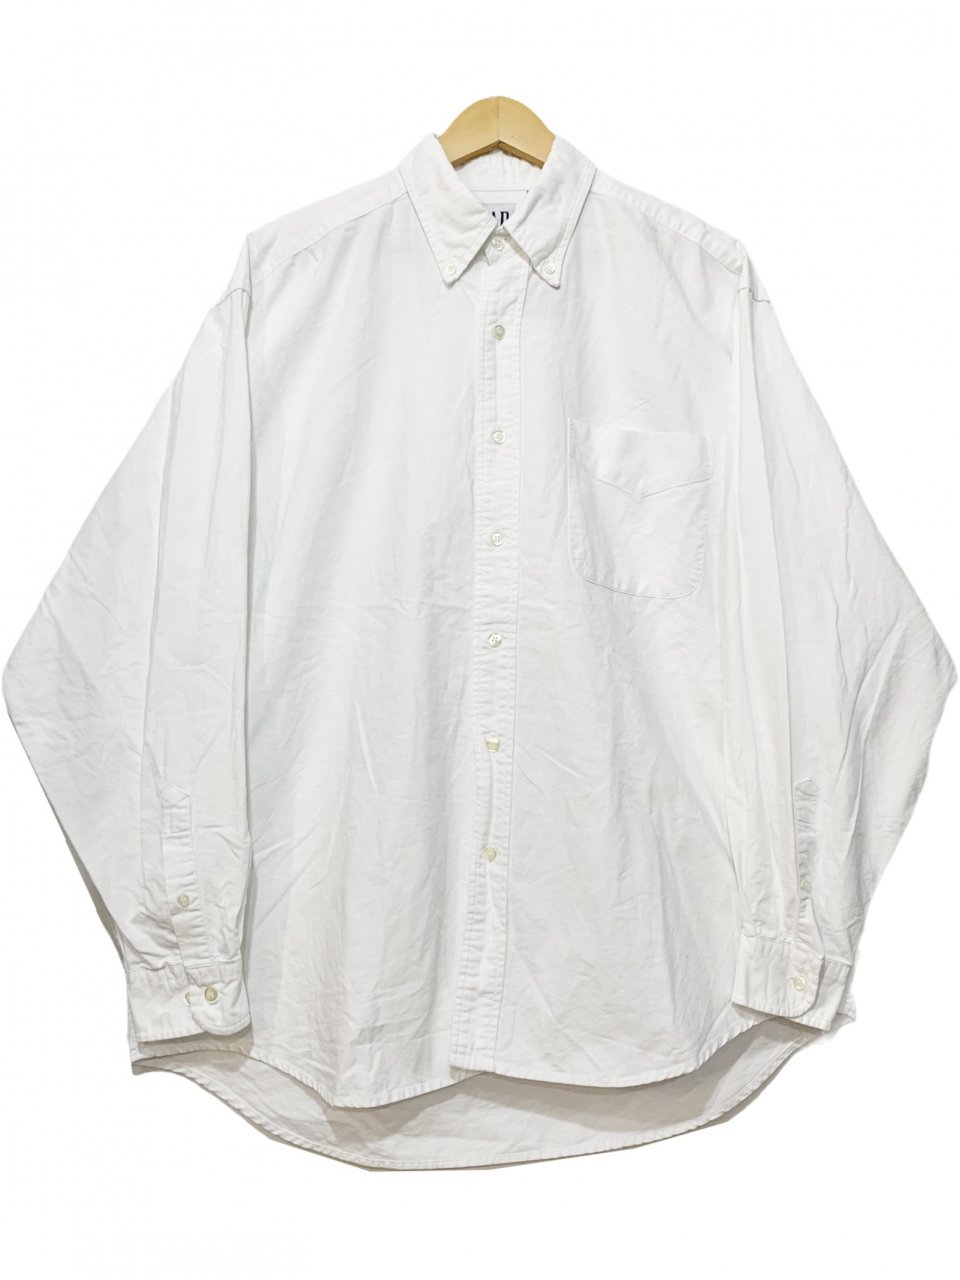 90s OLD GAP Cotton BD L/S Shirt 白 M オールドギャップ 長袖 シャツ 